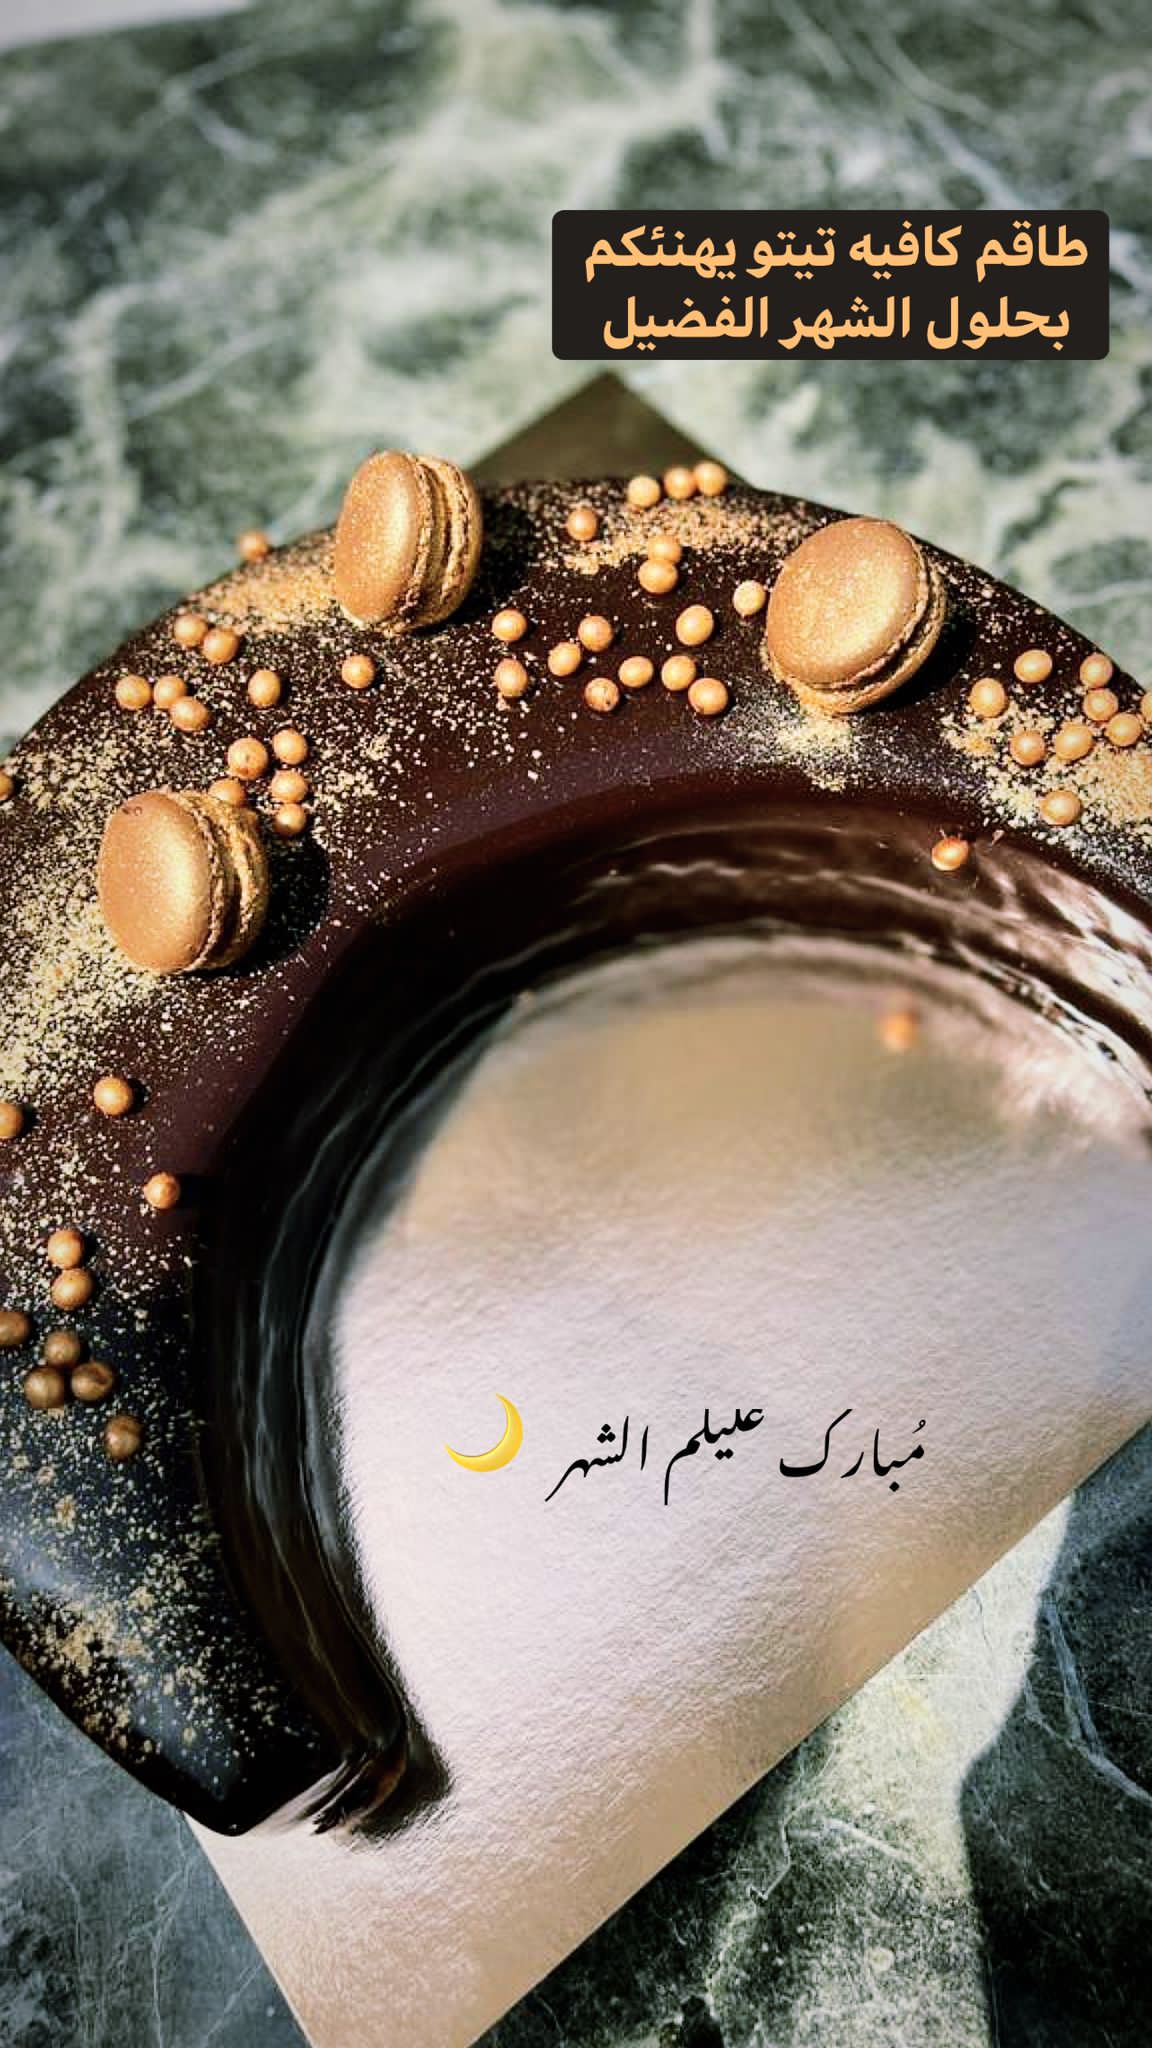 كعكة رمضان من مقهى تيتو .. الأعداد محدودة